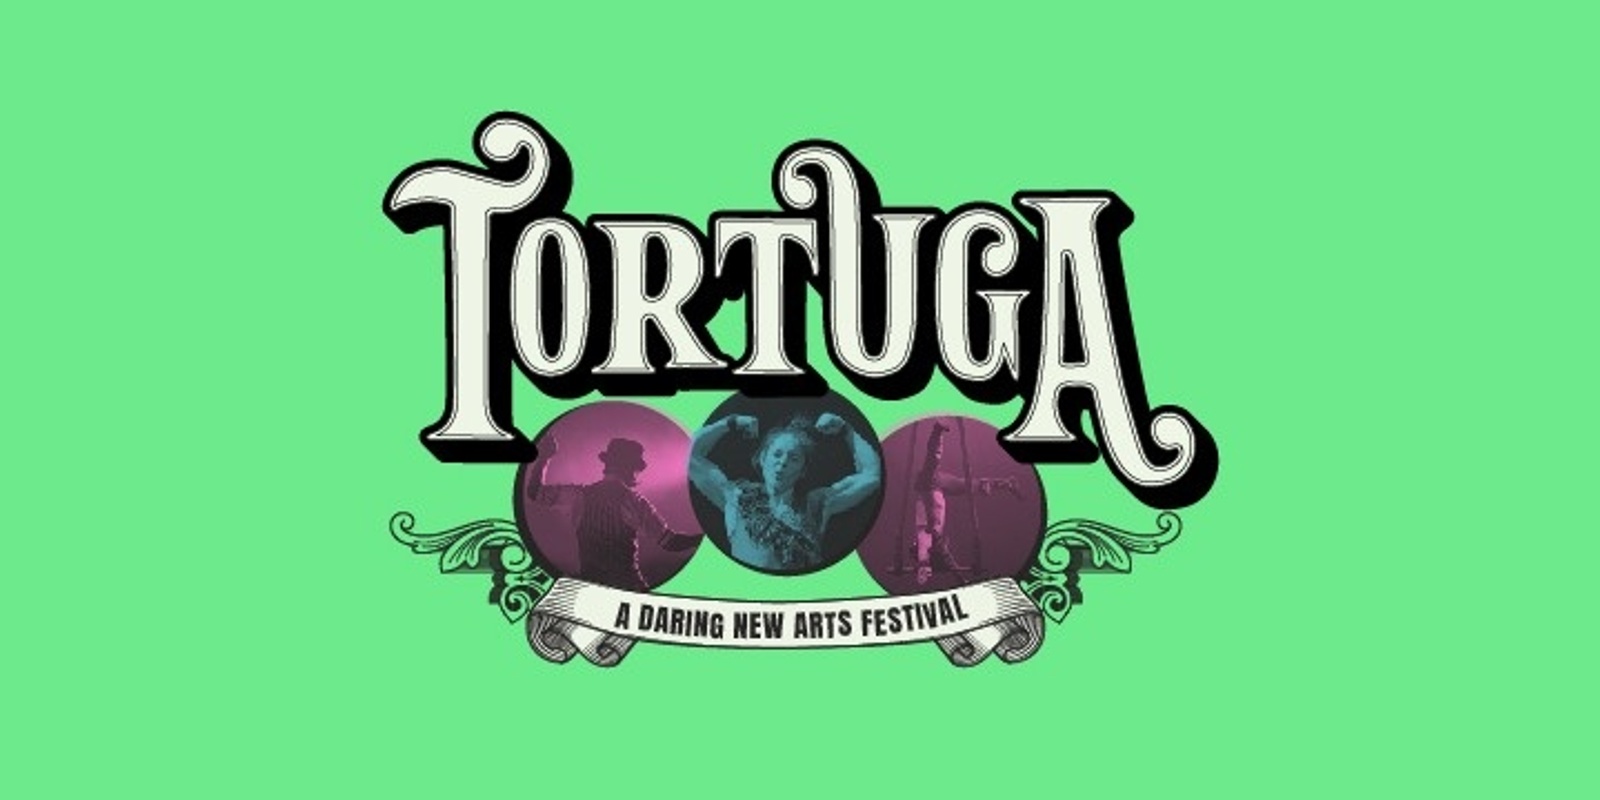 TORTUGA Festival's banner